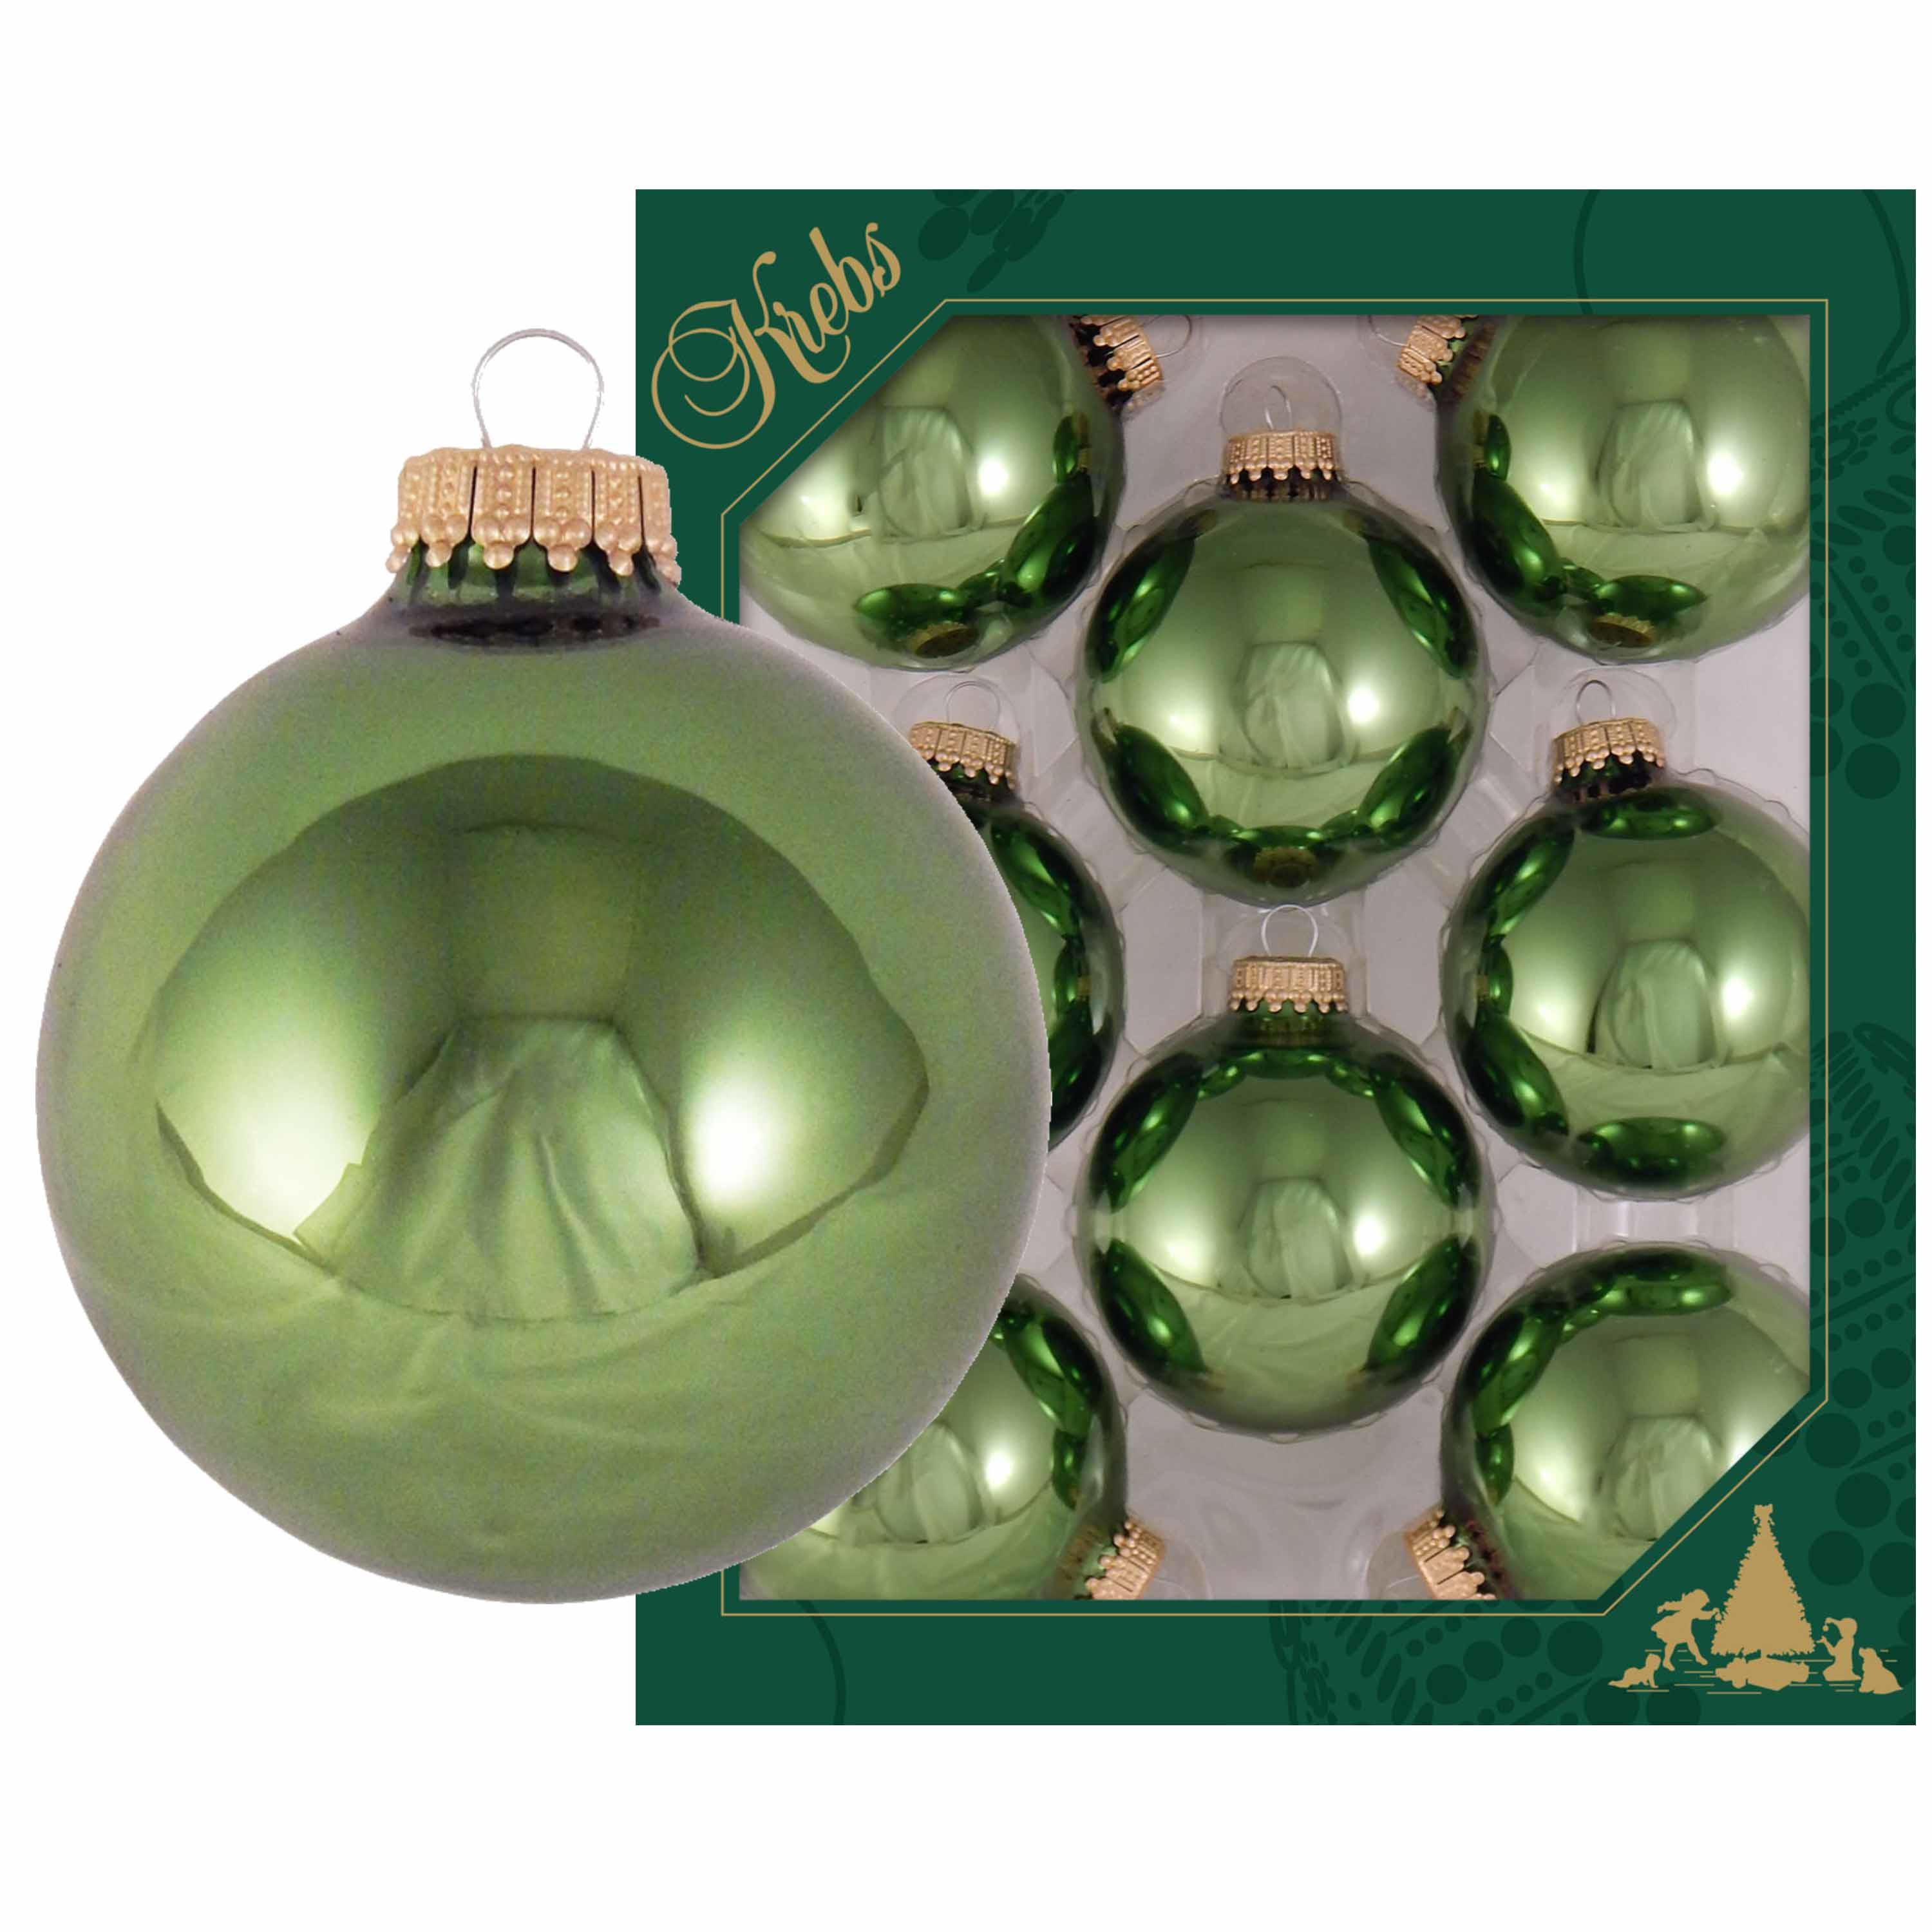 24x Jungle groene glazen kerstballen glans 7 cm kerstboomversiering